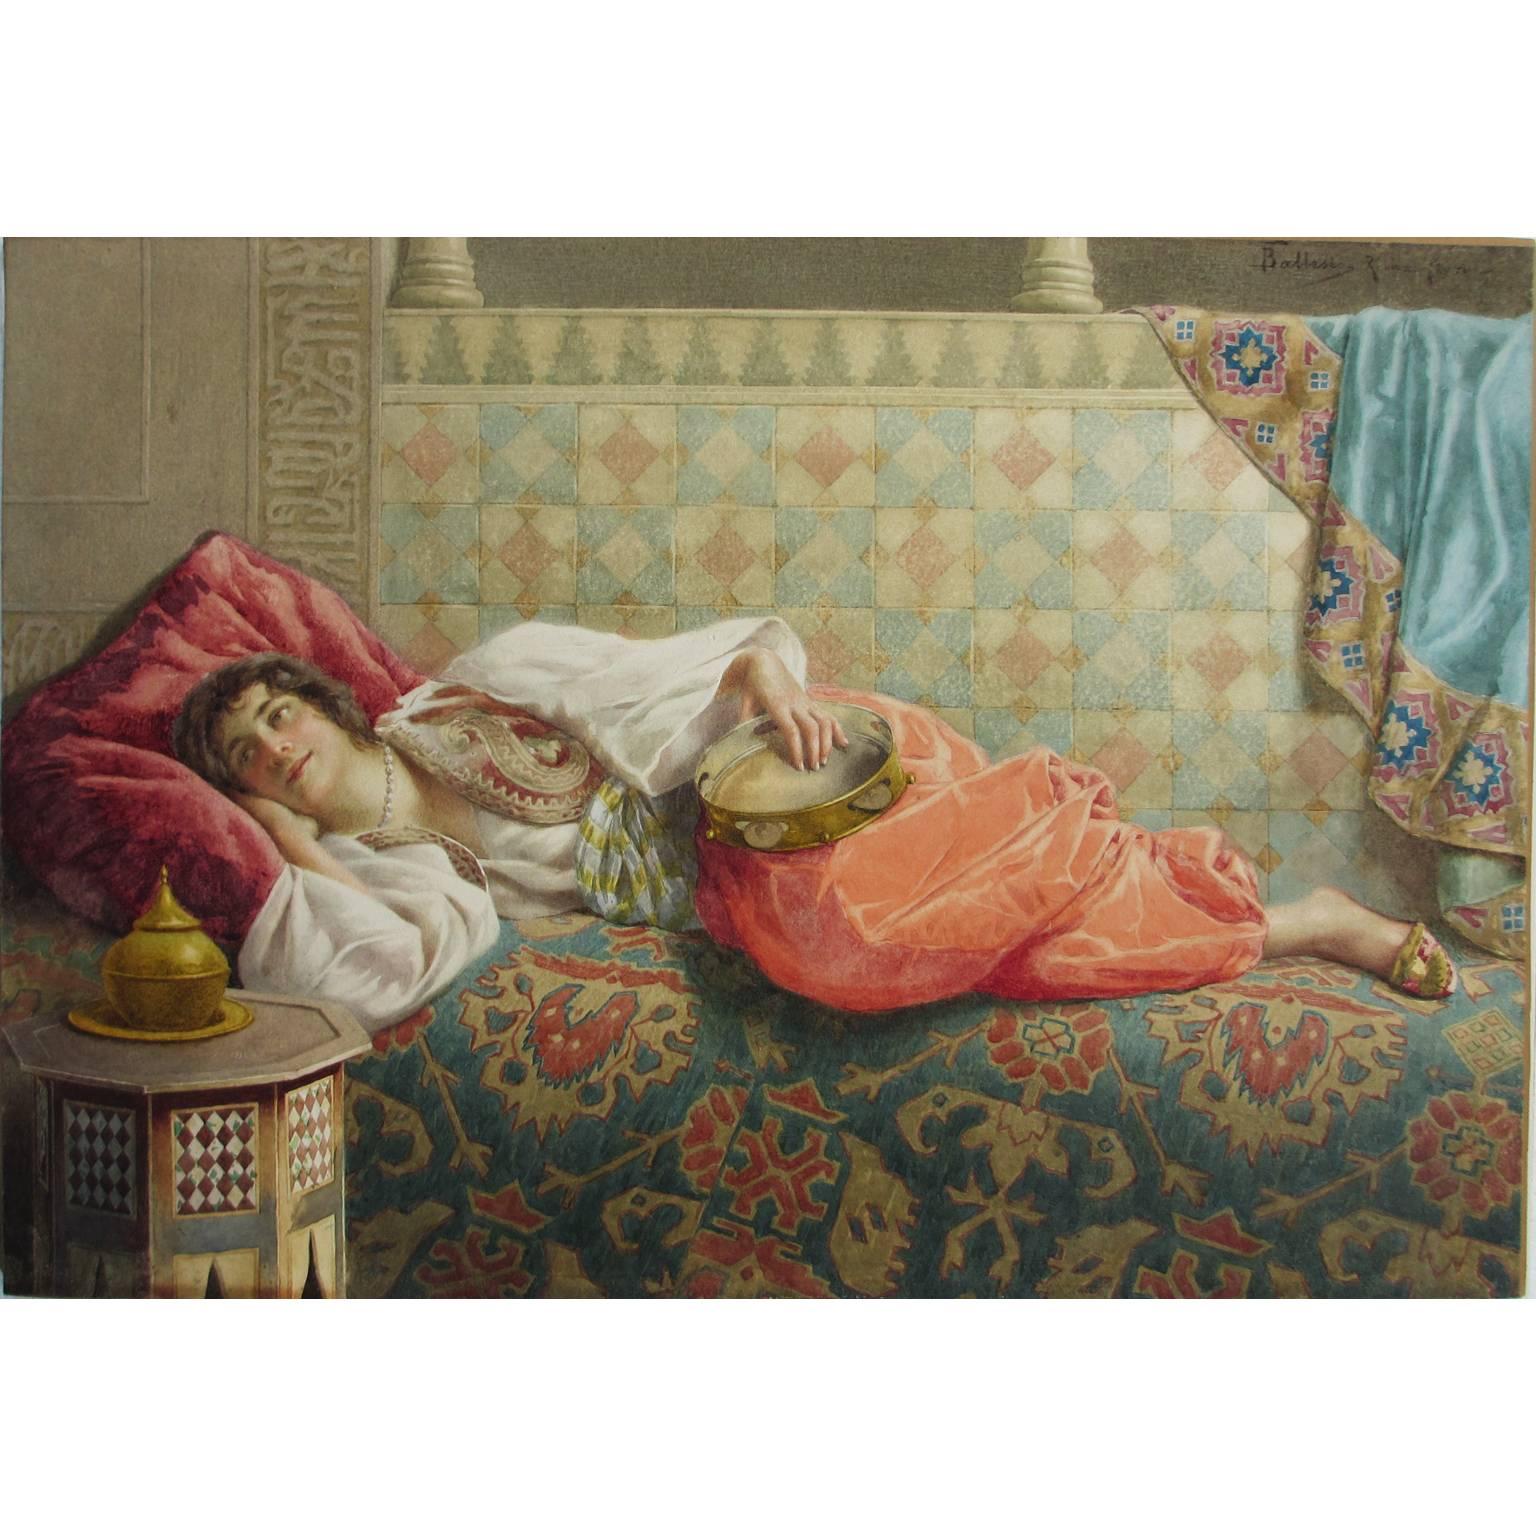 Francesco Ballesio (italien, 1860-1923). Une belle figure orientaliste au crayon et à l'aquarelle rehaussée de gomme arabique sur papier d'